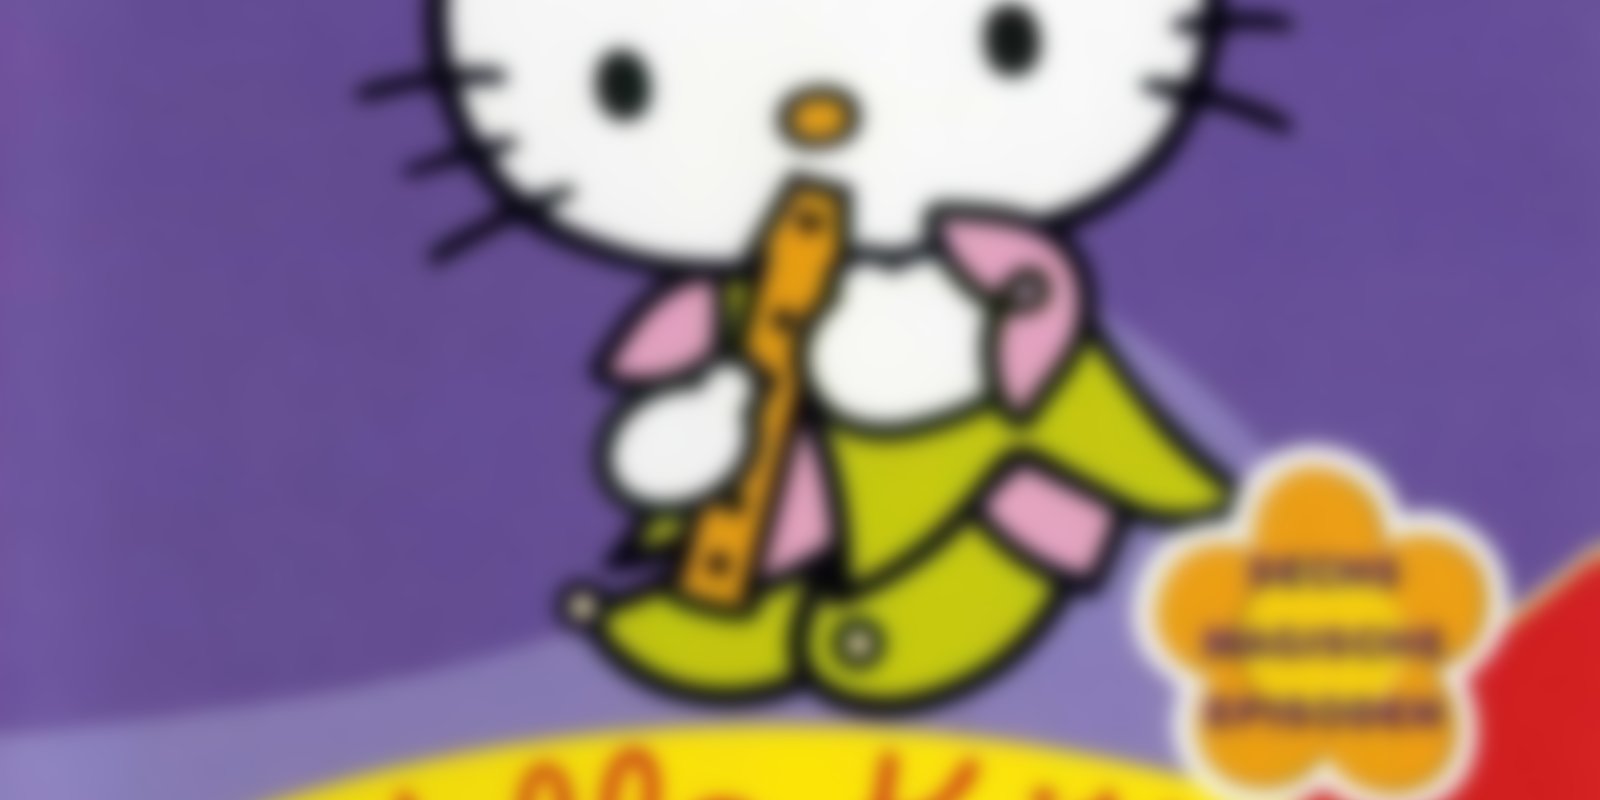 Hello Kitty - Fantastische Geschichten